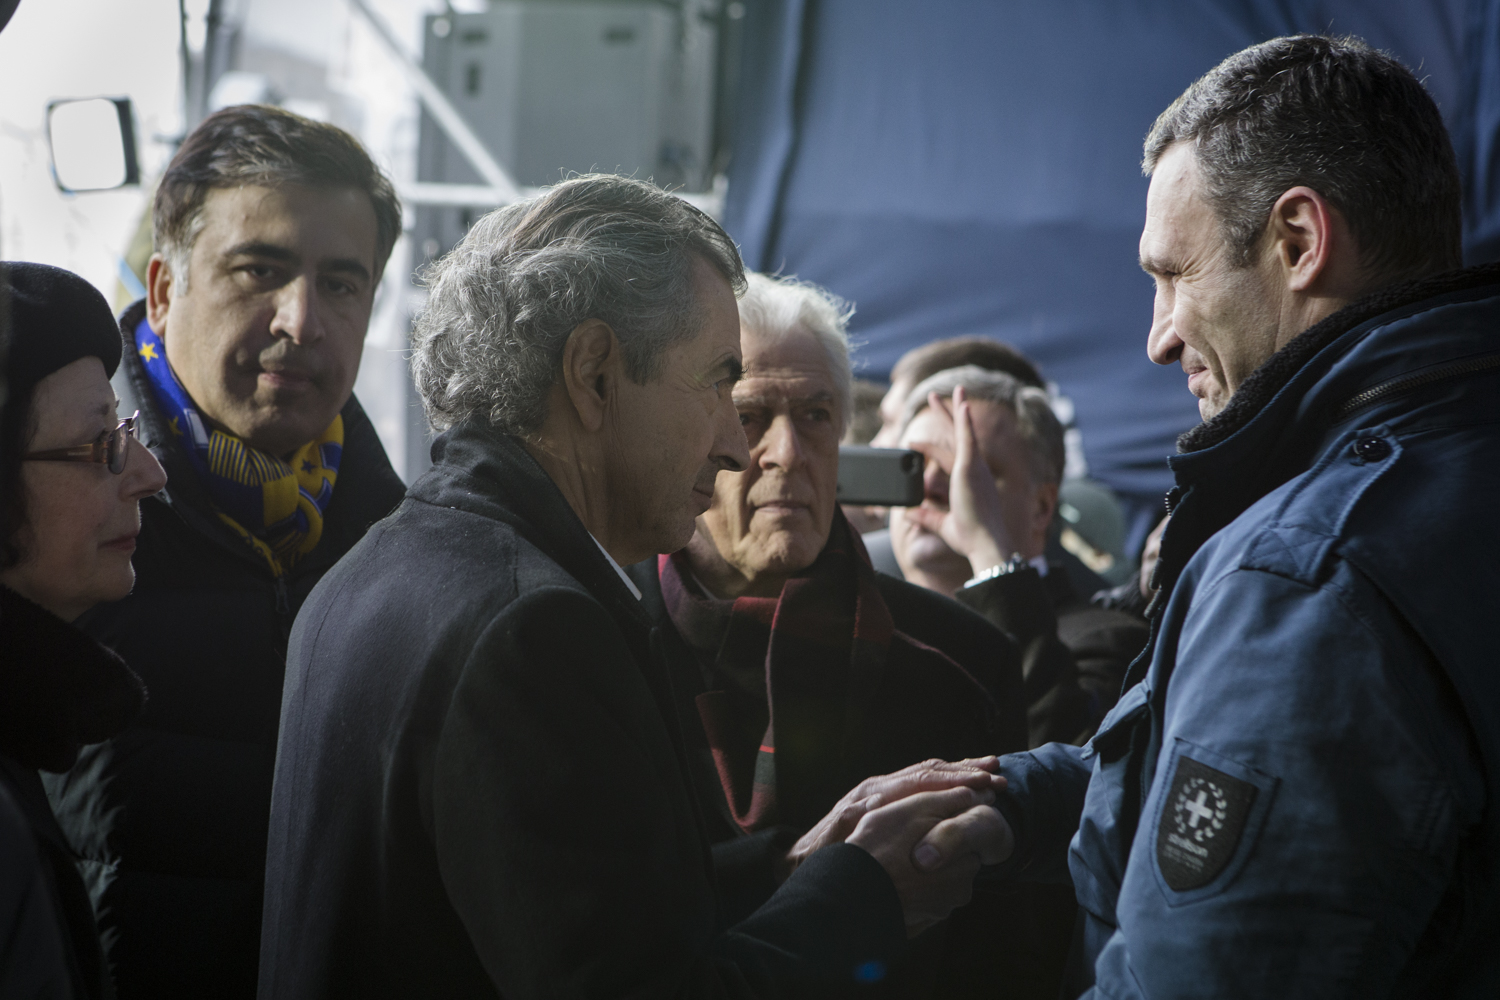 Rencontre entre Bernard-Henri Lévy et Vitali Klitschko sur la tribune de la place Maidan, Kiev, 2 mars 2014, sous le regard de Gilles Hertzog (au centre) et Galia Ackerman (à gauche)